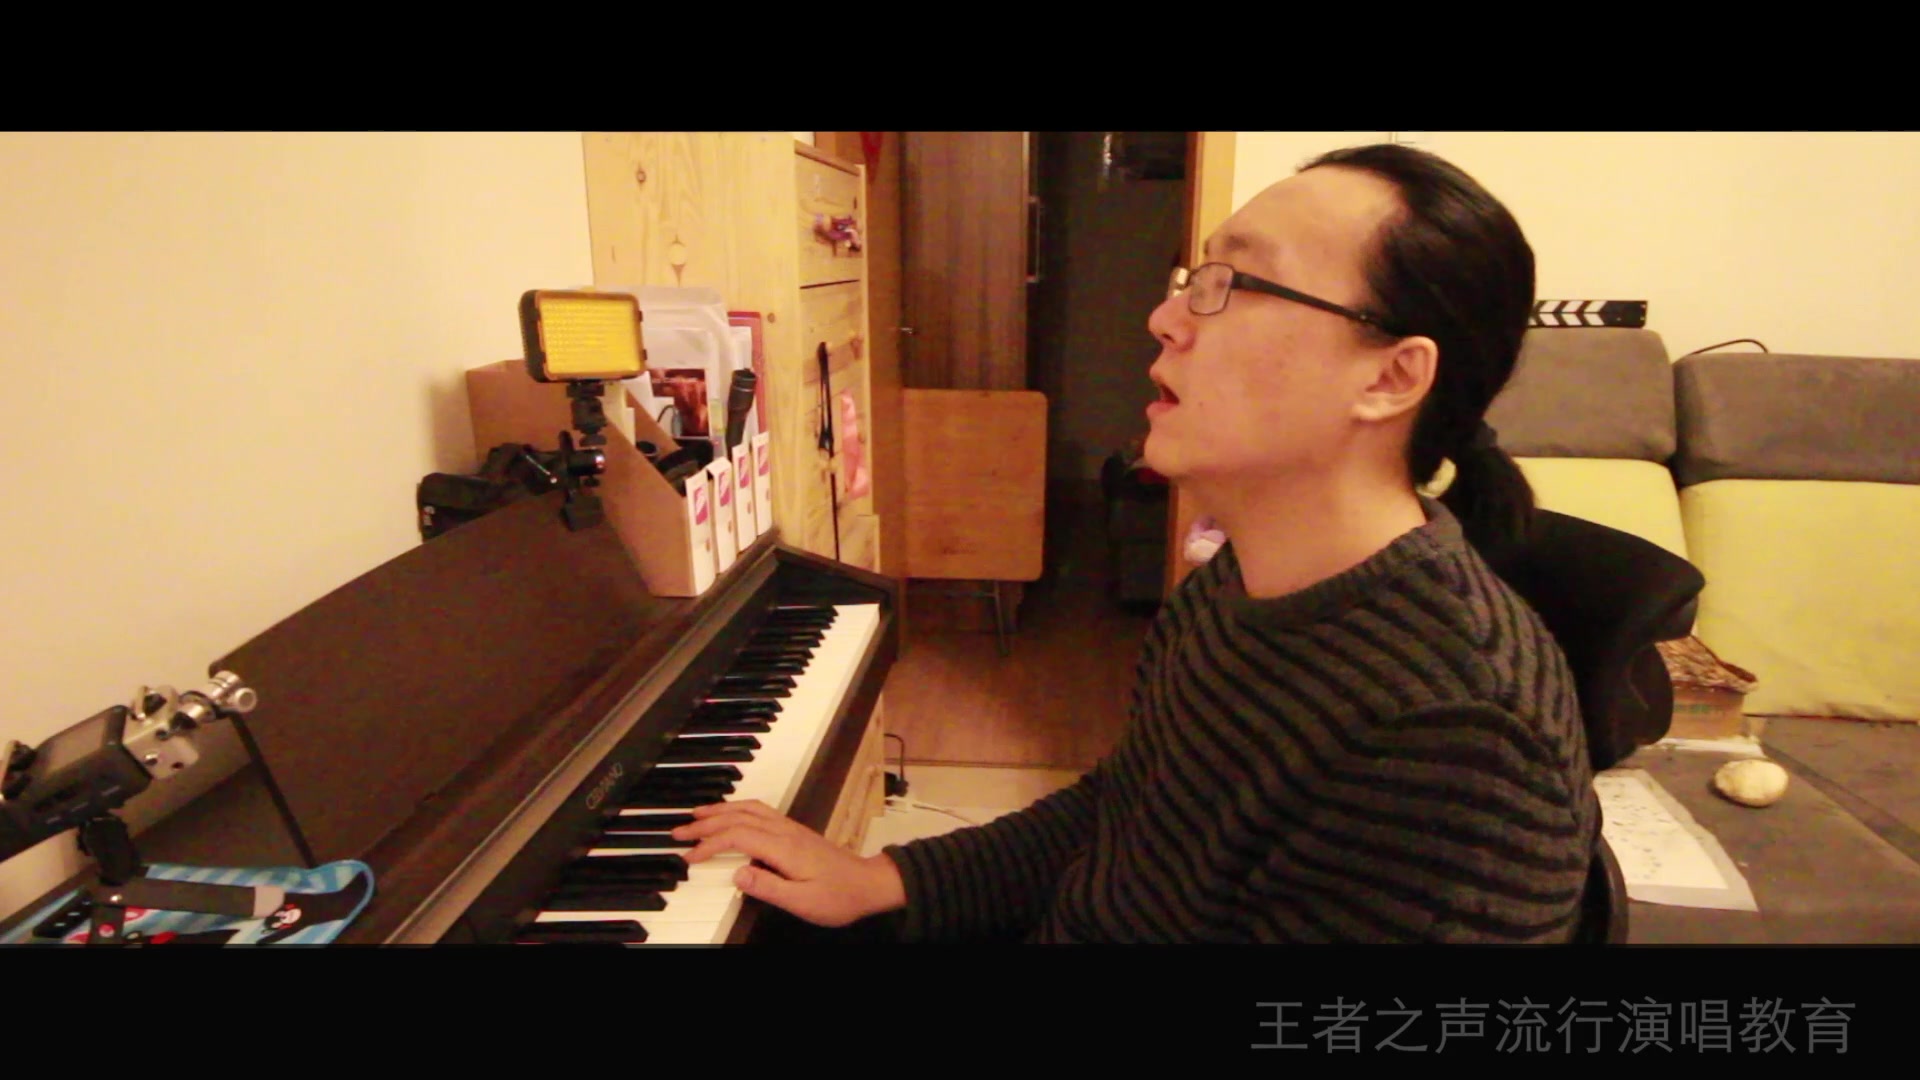 [图]王晗 教学视频 唱歌技巧 声乐教学 高音关闭教学 我是歌手 赵传《爱要怎么说出口》演唱示范高音赵传